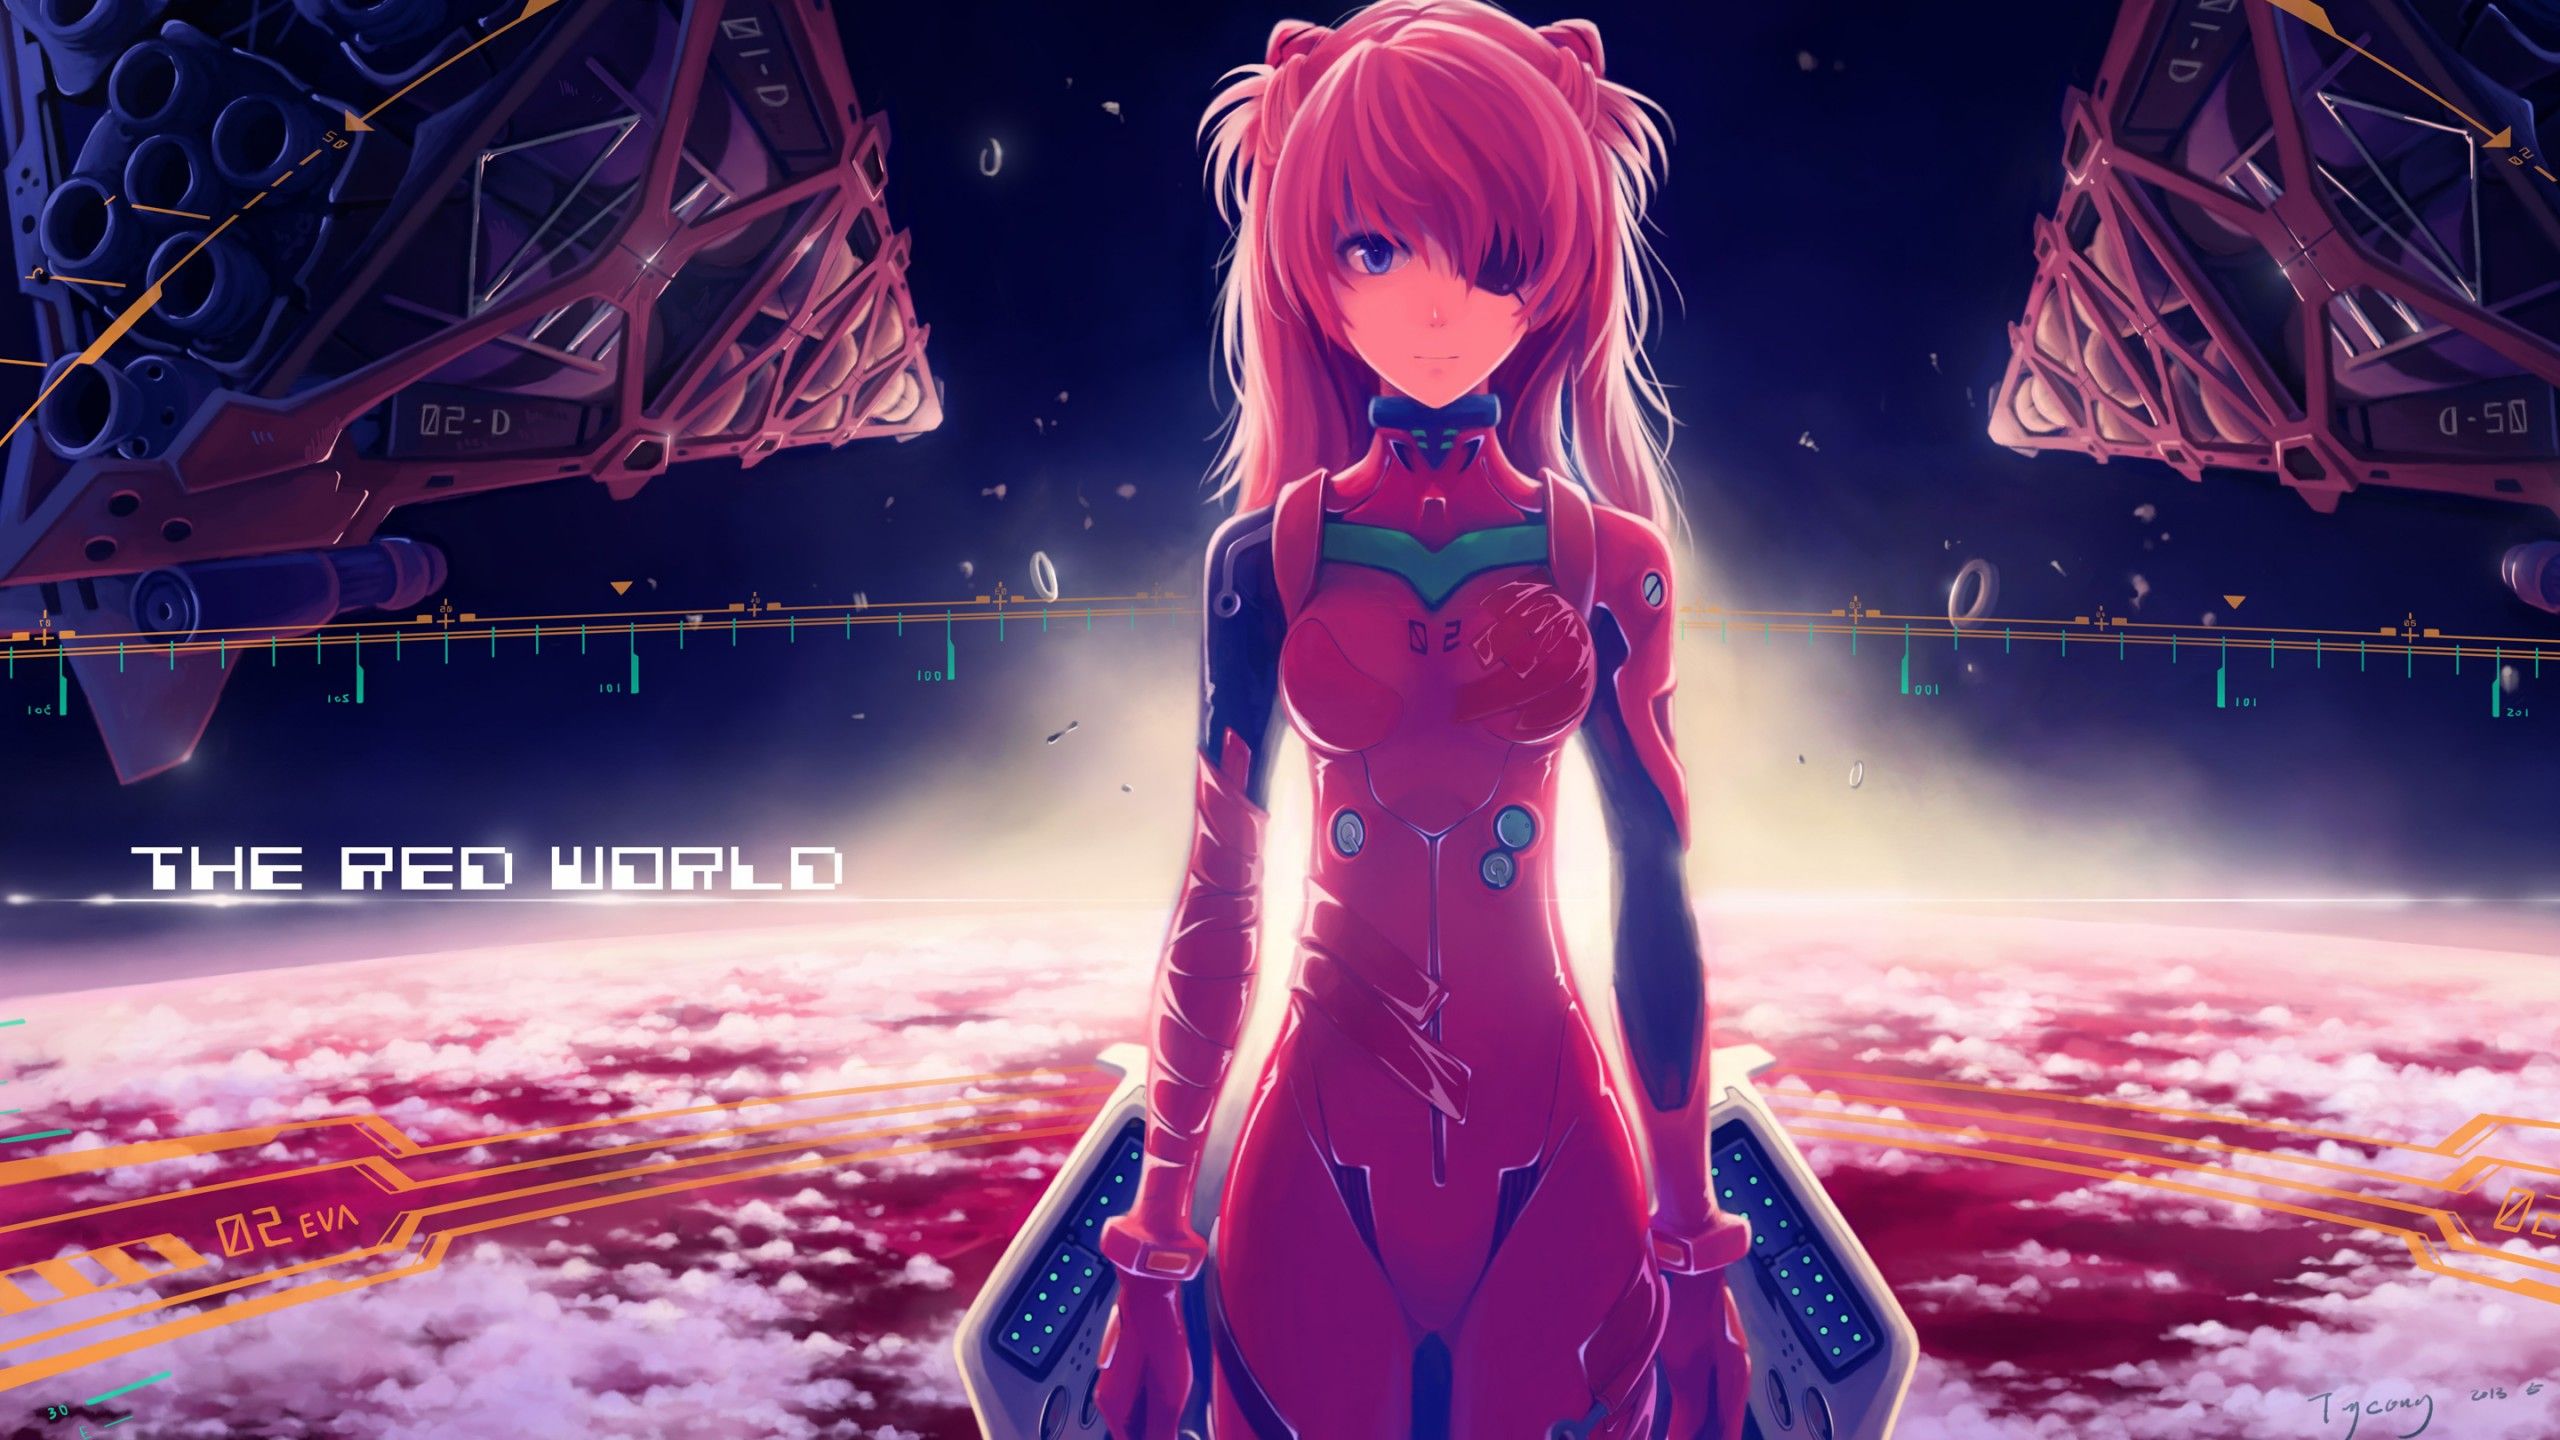 Anime Gamer Girl Desktop Wallpaper .baltana.com